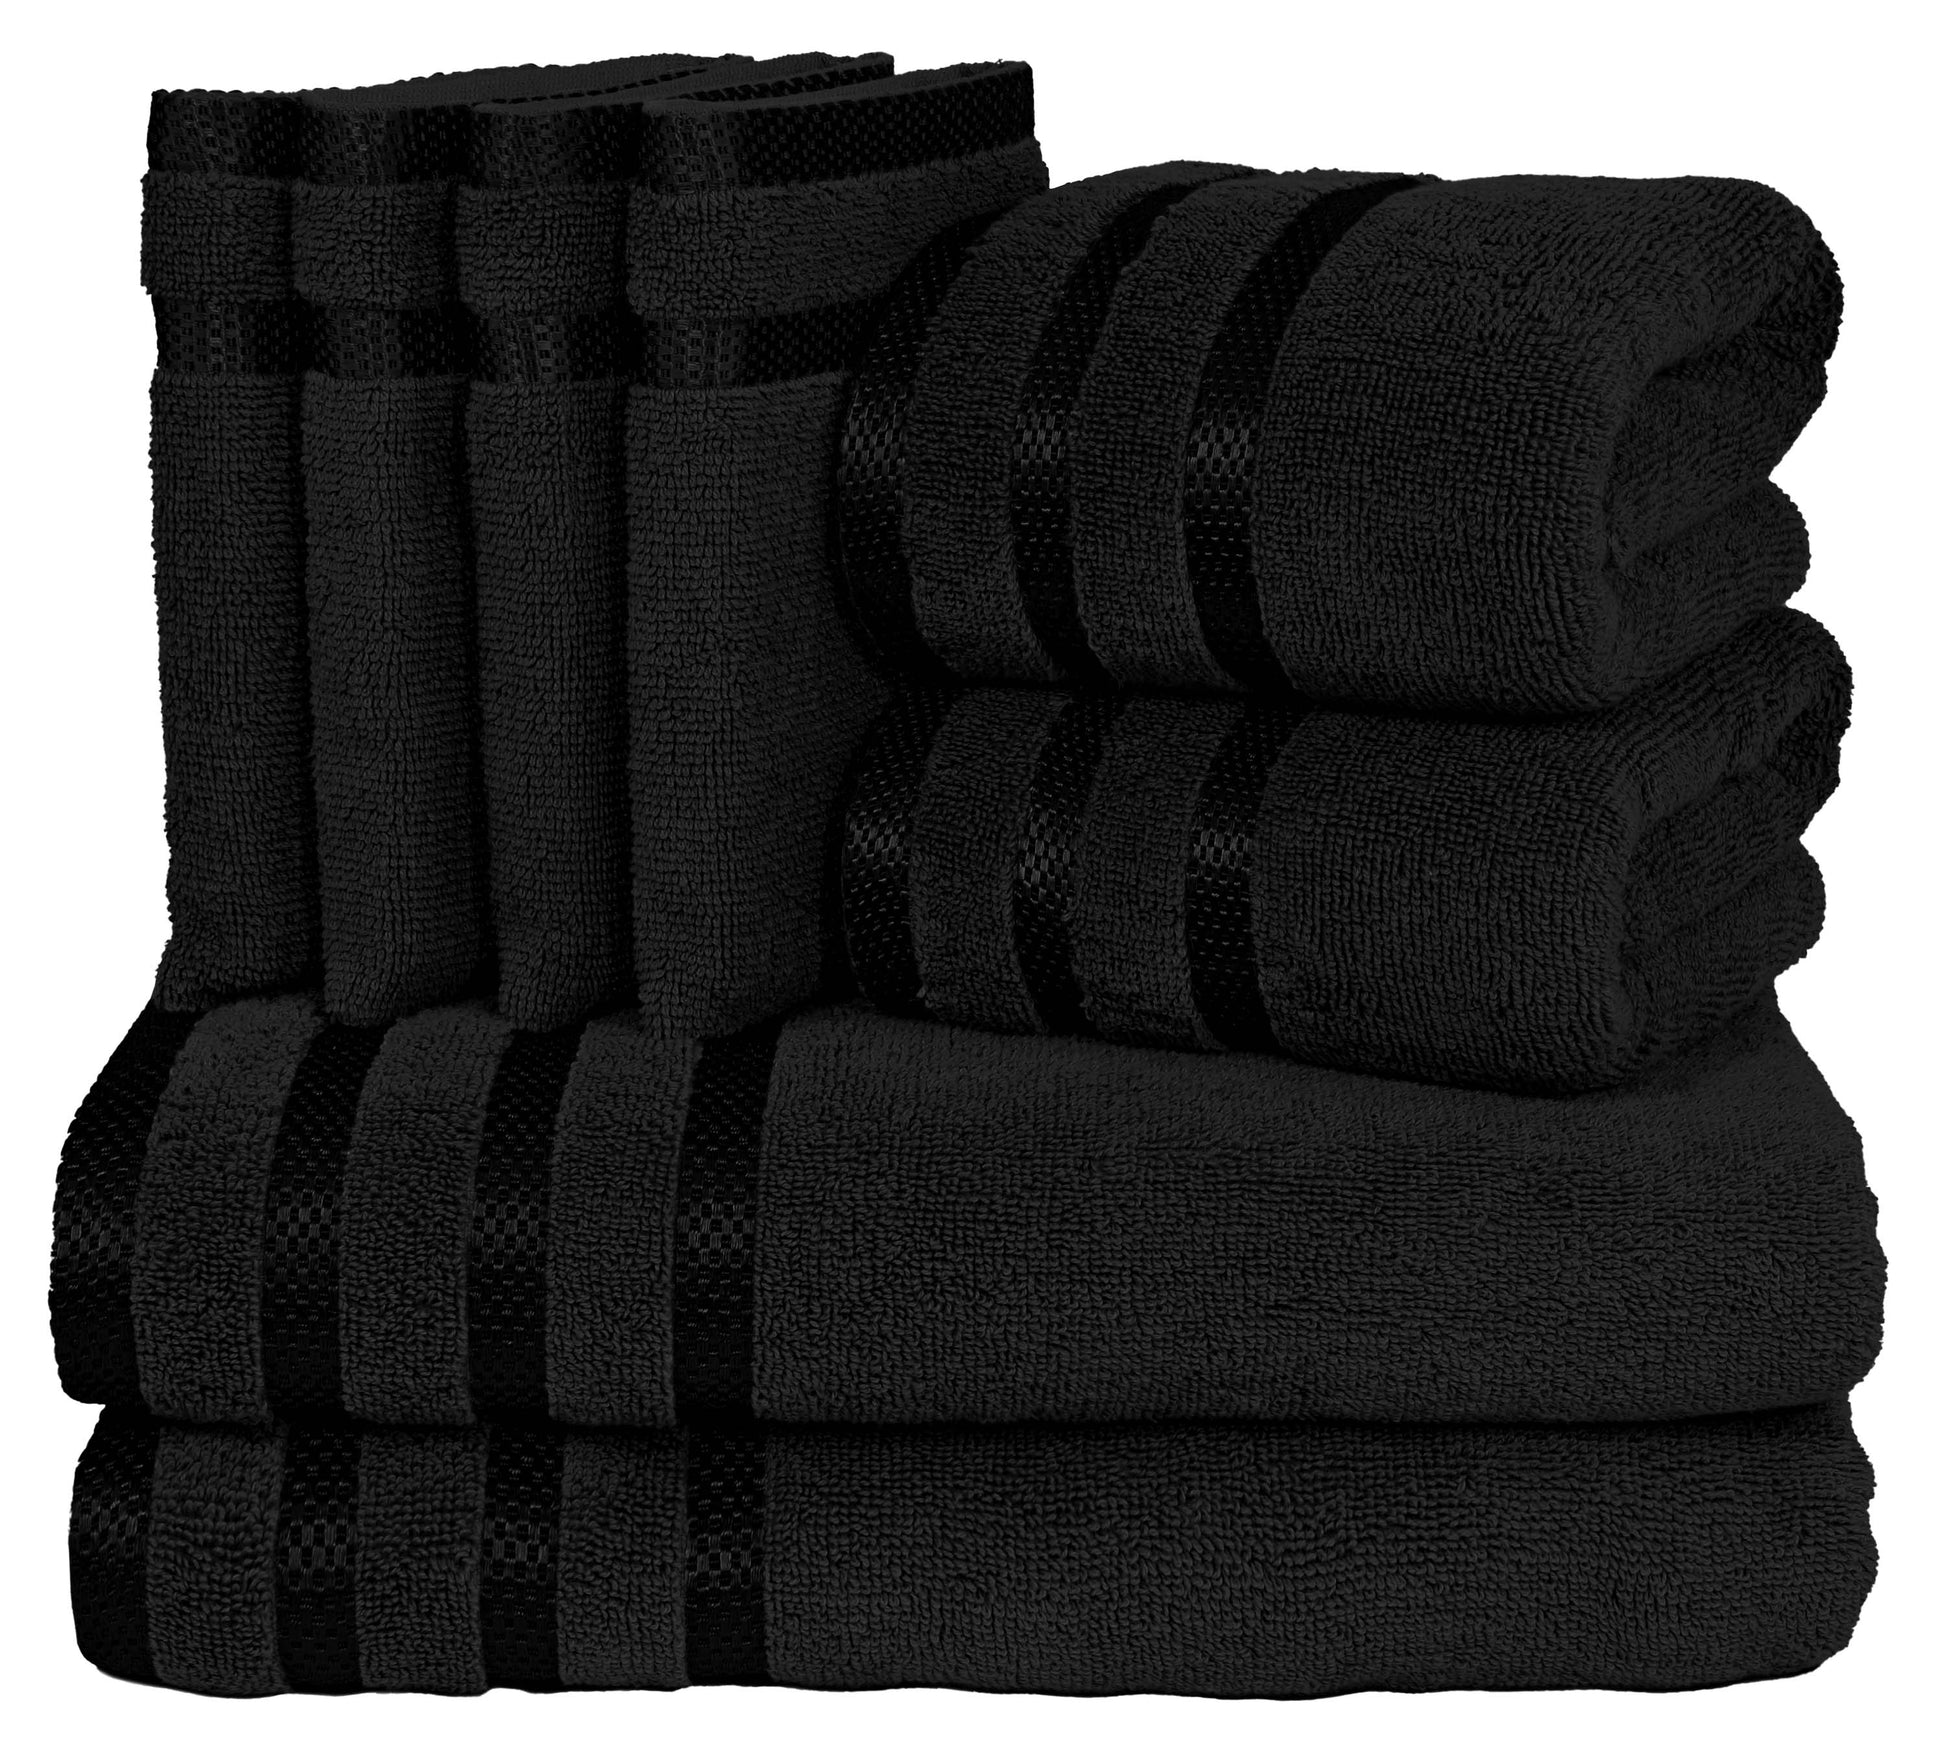 8 Pc Towel Set, 2 Bath Towel, 2 Hand Towels, 4 Body Wash Gloves, Luxury 100% Combed Cotton Bathroom Towels, Soft Plush & Premium Towel Bale Set-Weave Essentials-Black-Weave Essentials